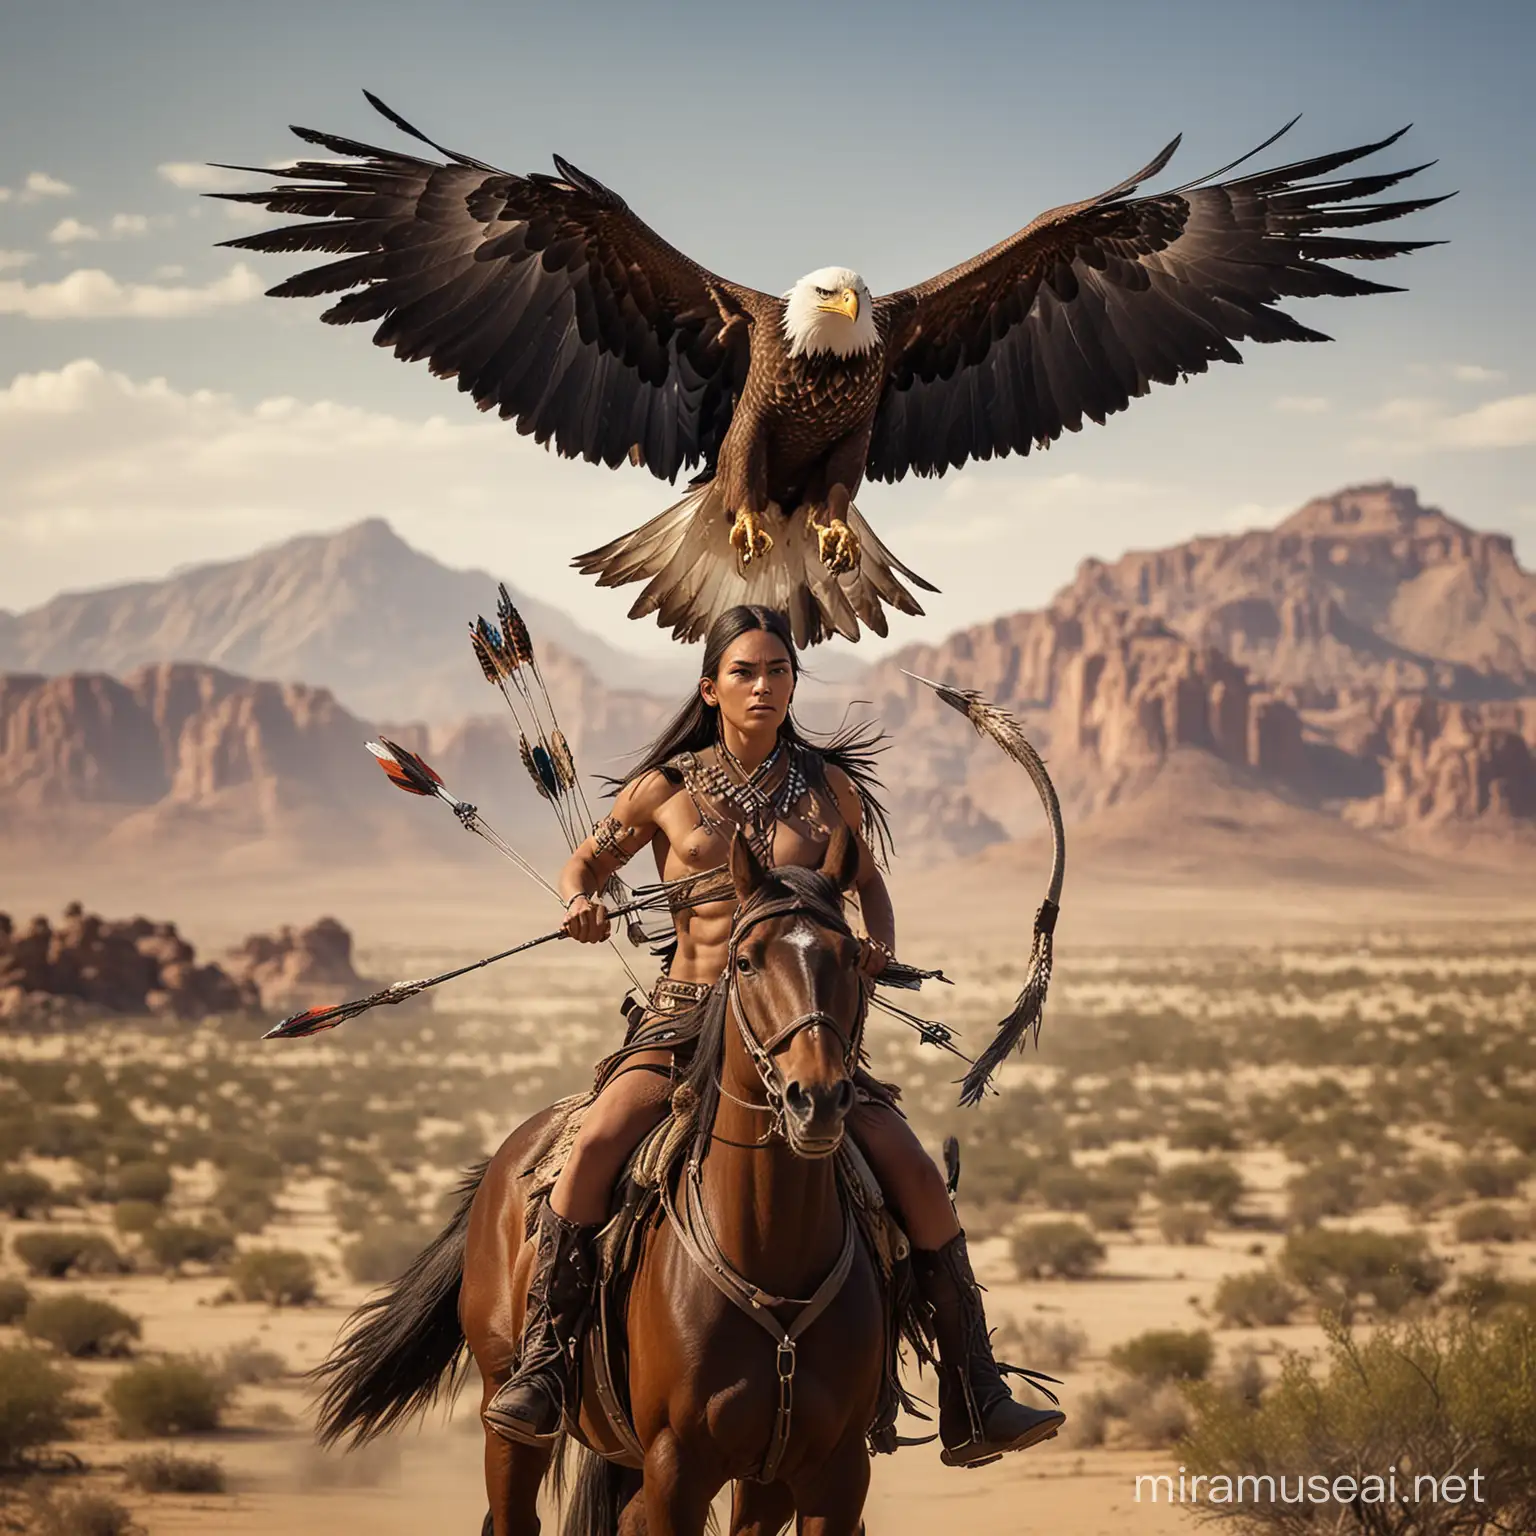 Guerrero apache alto musculoso guapo con alas grandes largas que le salen de la espalda   va a caballo con las alas extendidas  con arco y flecha  y  una gigantesca aguila real volando  y de fondo guerreras apaches a caballo en el desierto 